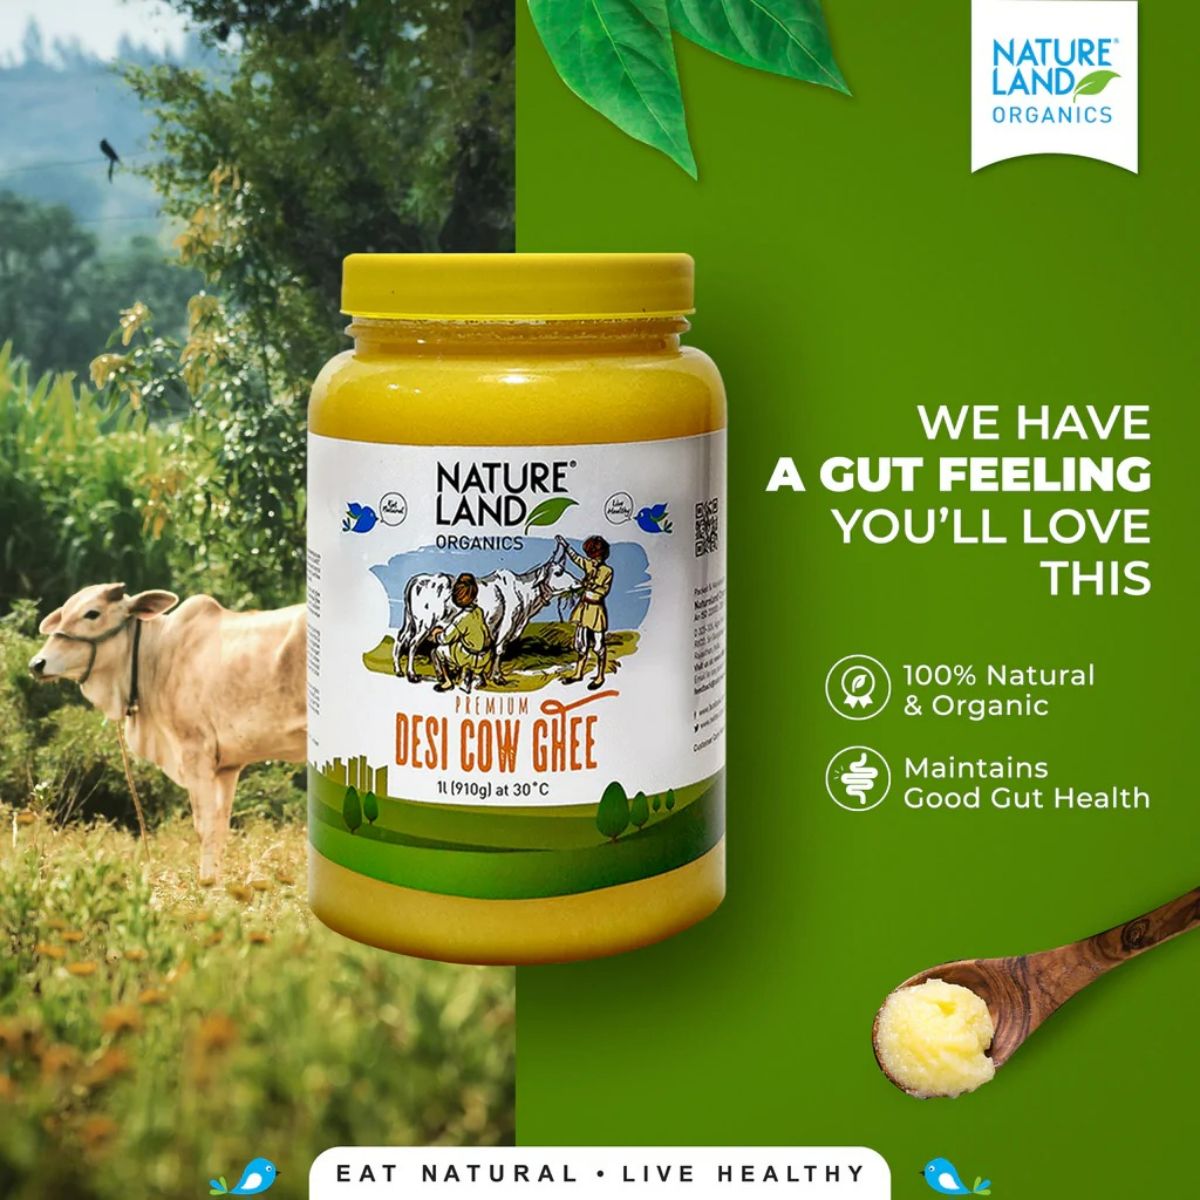 Nature Land Organics Premium Desi Cow Ghee